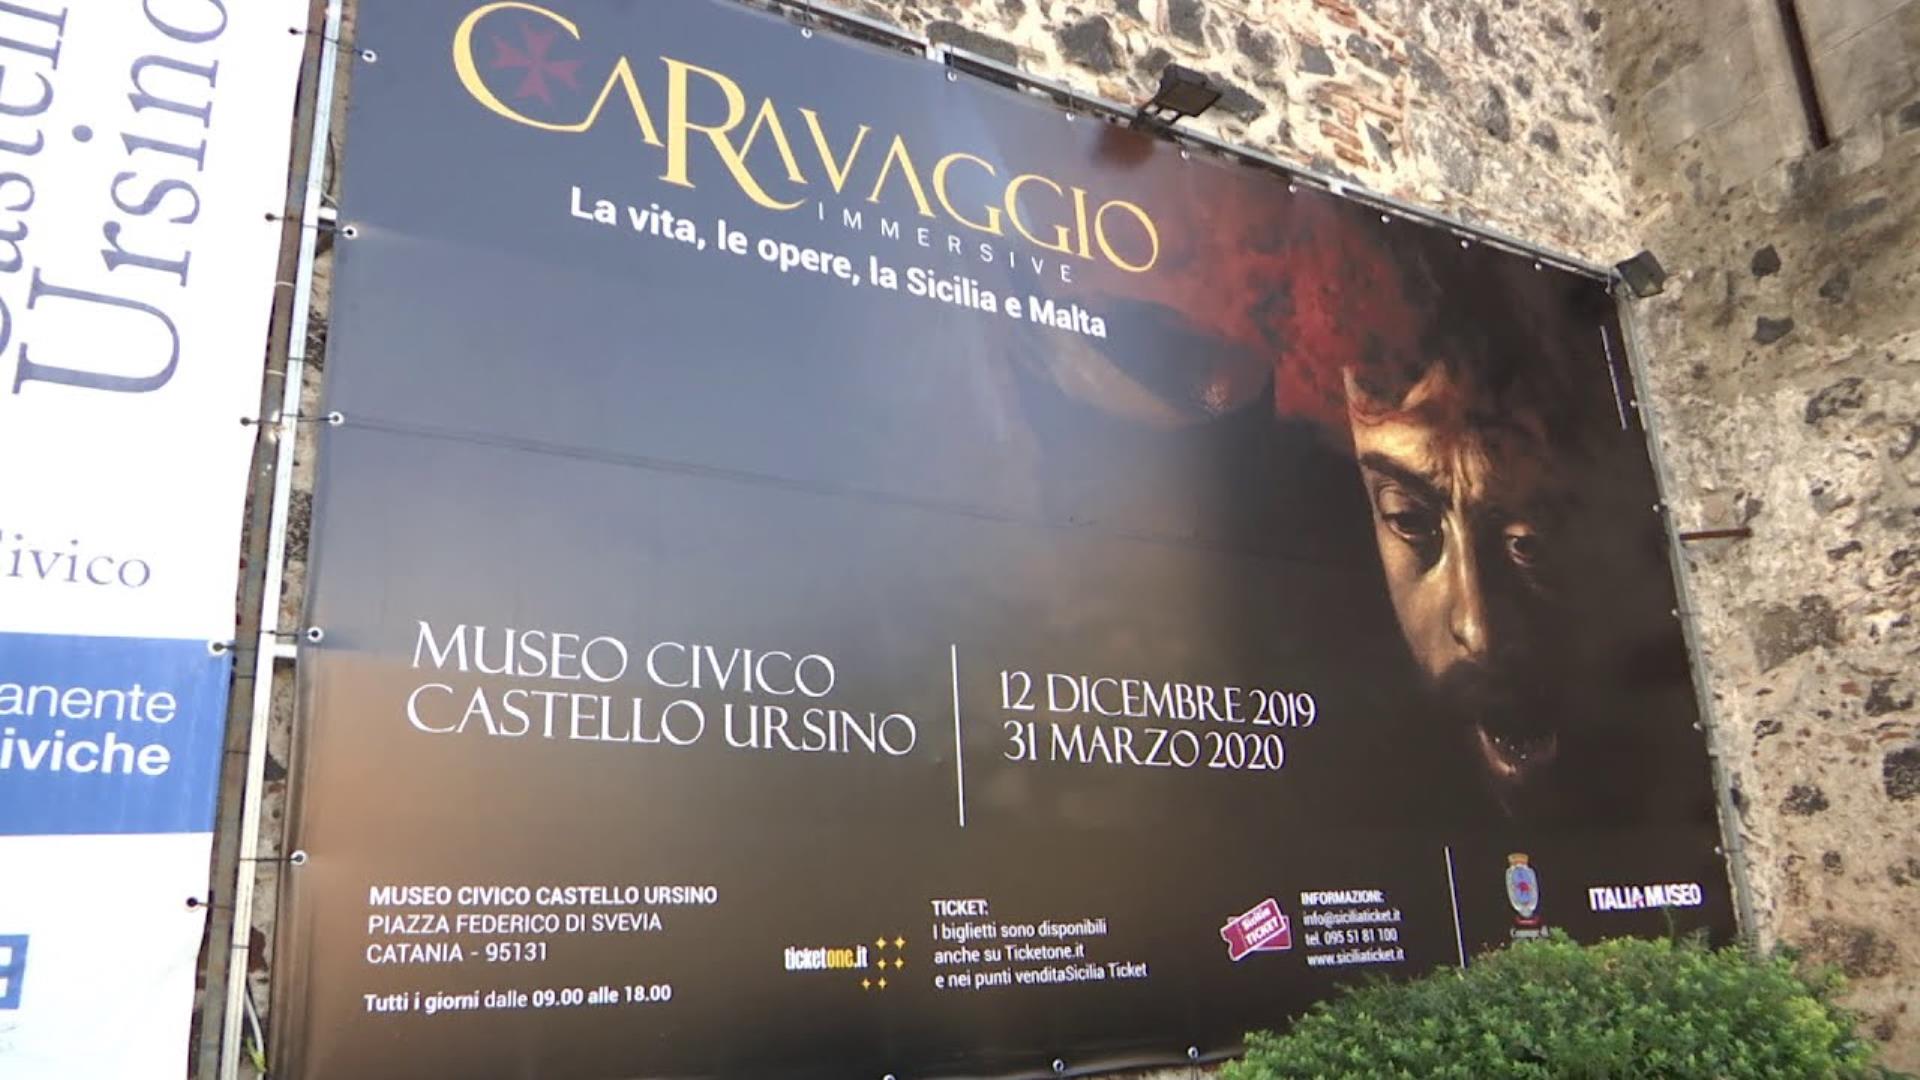 Caravaggio Immersive a Catania